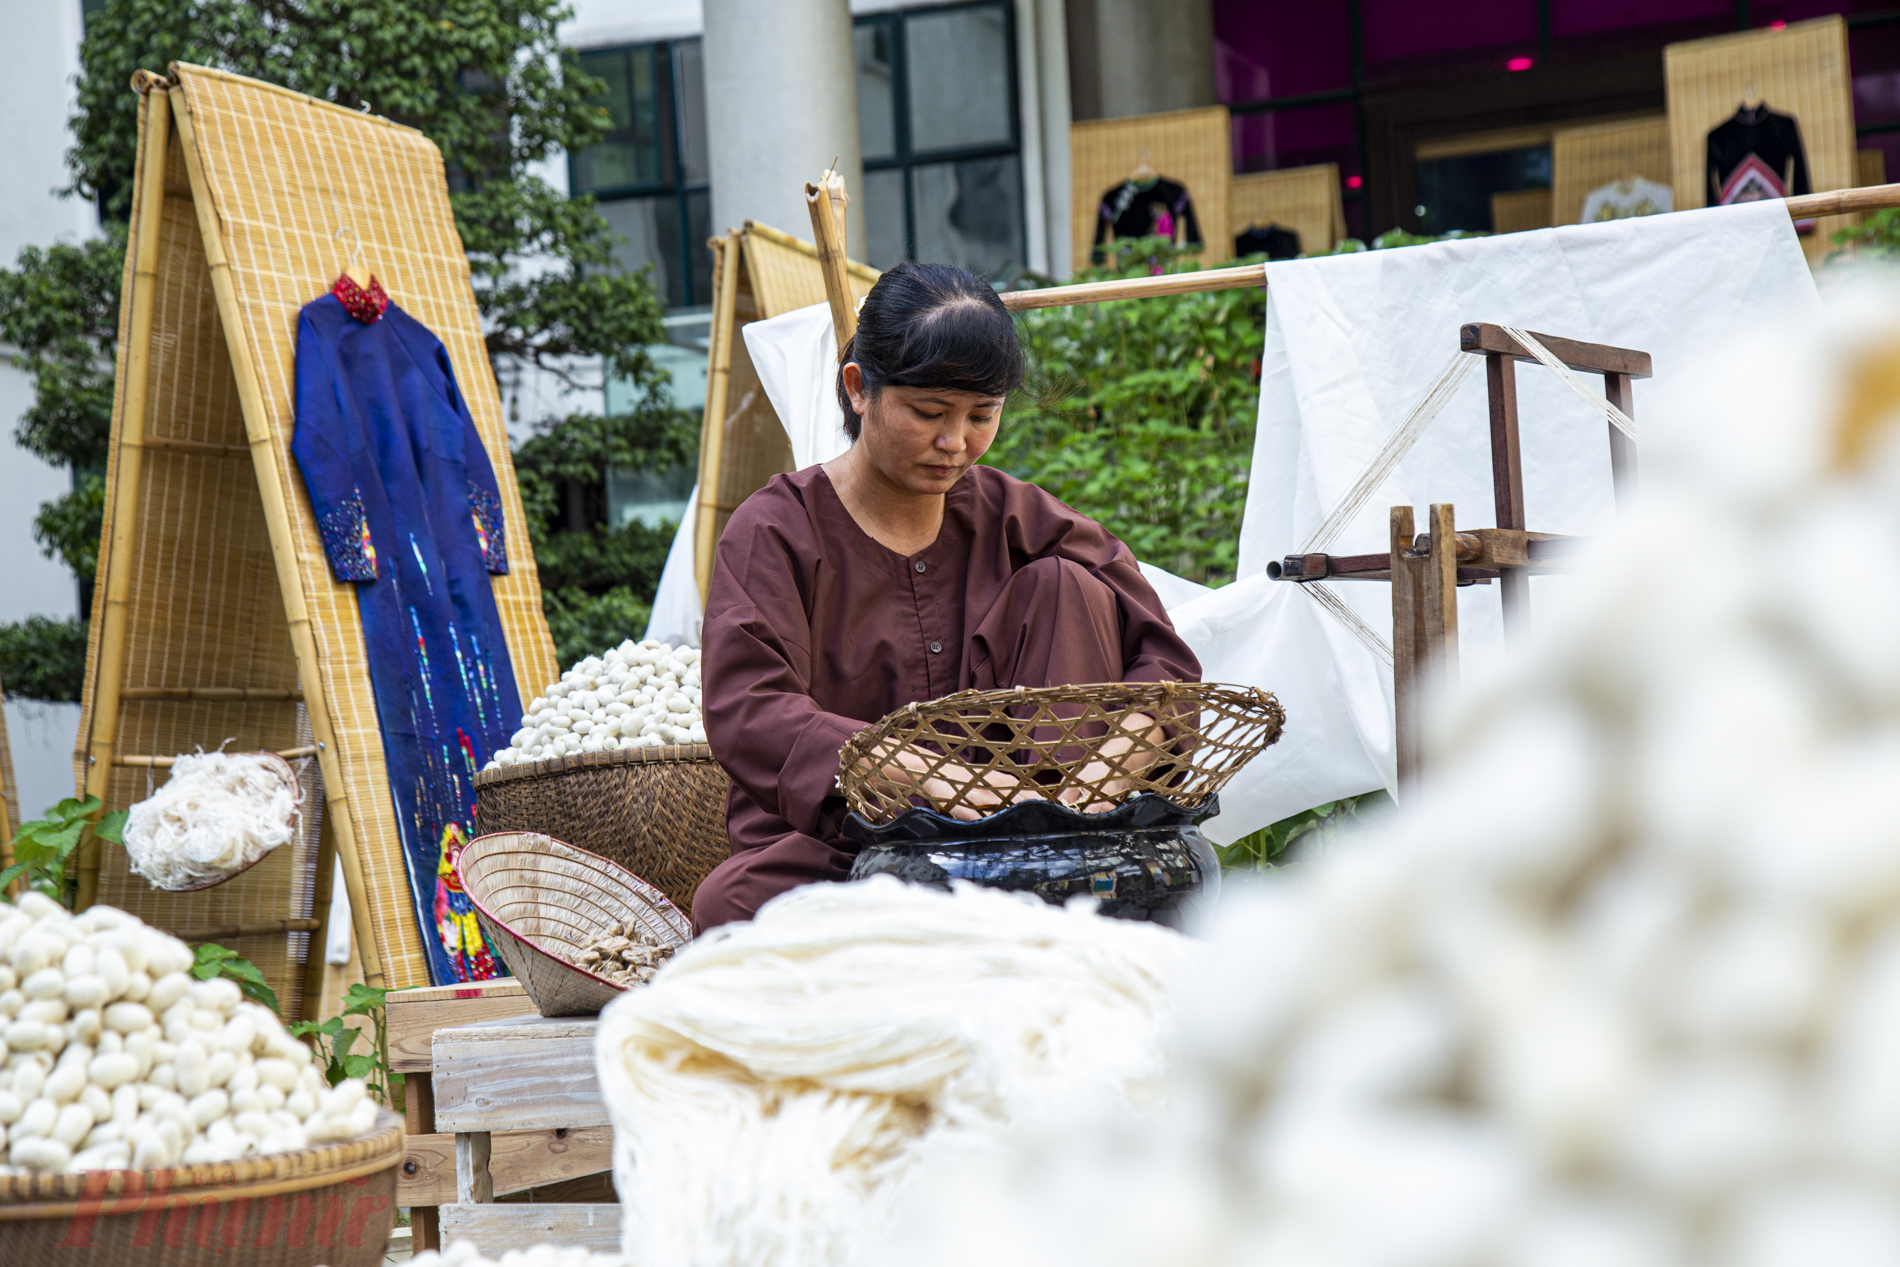 Các nhà thiết kế đã sử dụng chất liệu lụa Vietnam silk house và vải gai AP để sáng tạo các mẫu áo dài, như một cách riêng để tôn vinh giá trị nghệ thuật truyền thống.